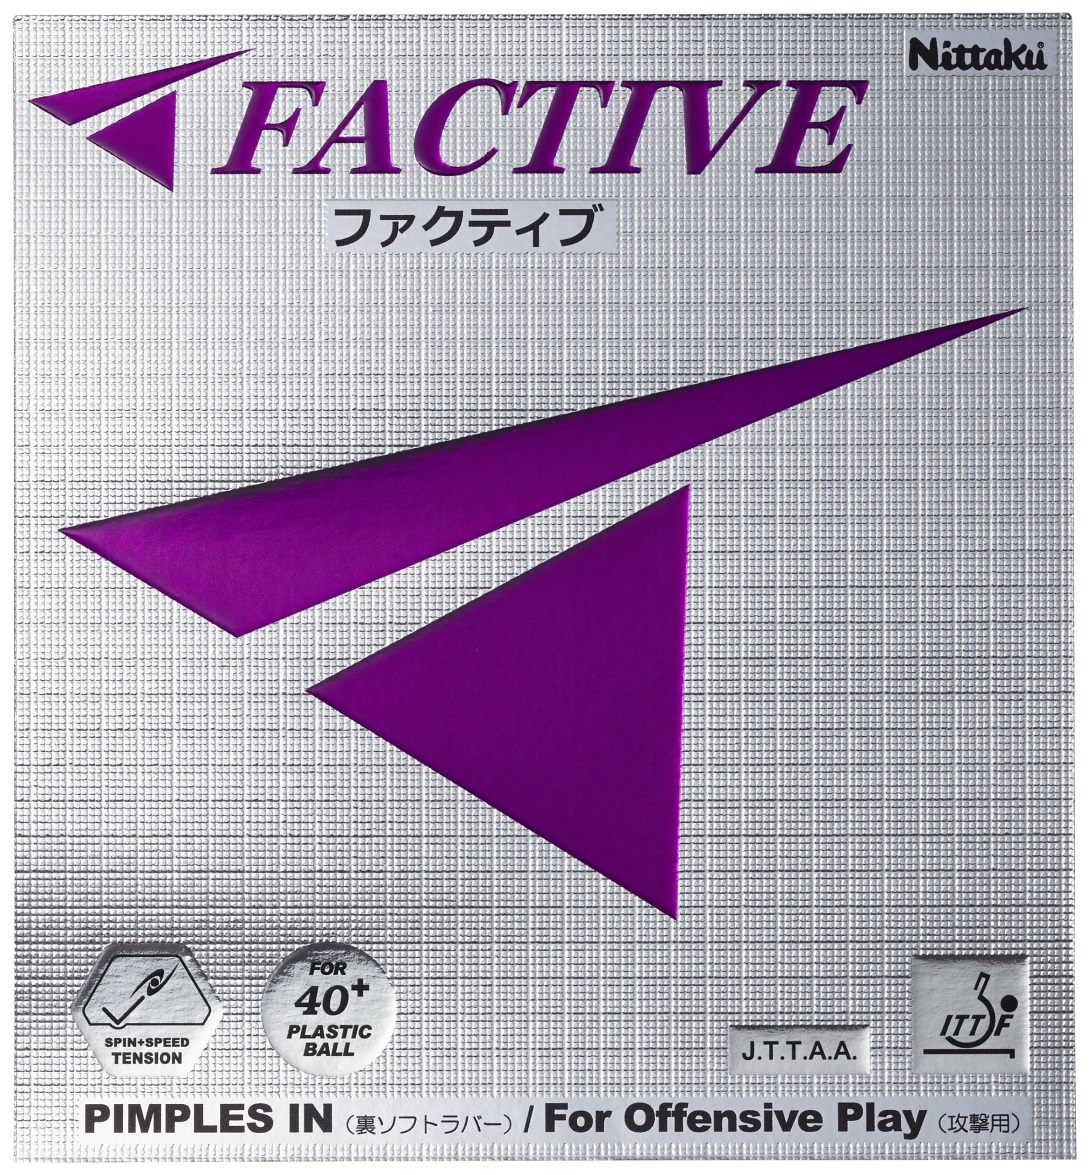 ファクティブ | Nittaku(ニッタク) 日本卓球 | 卓球用品の総合メーカー 